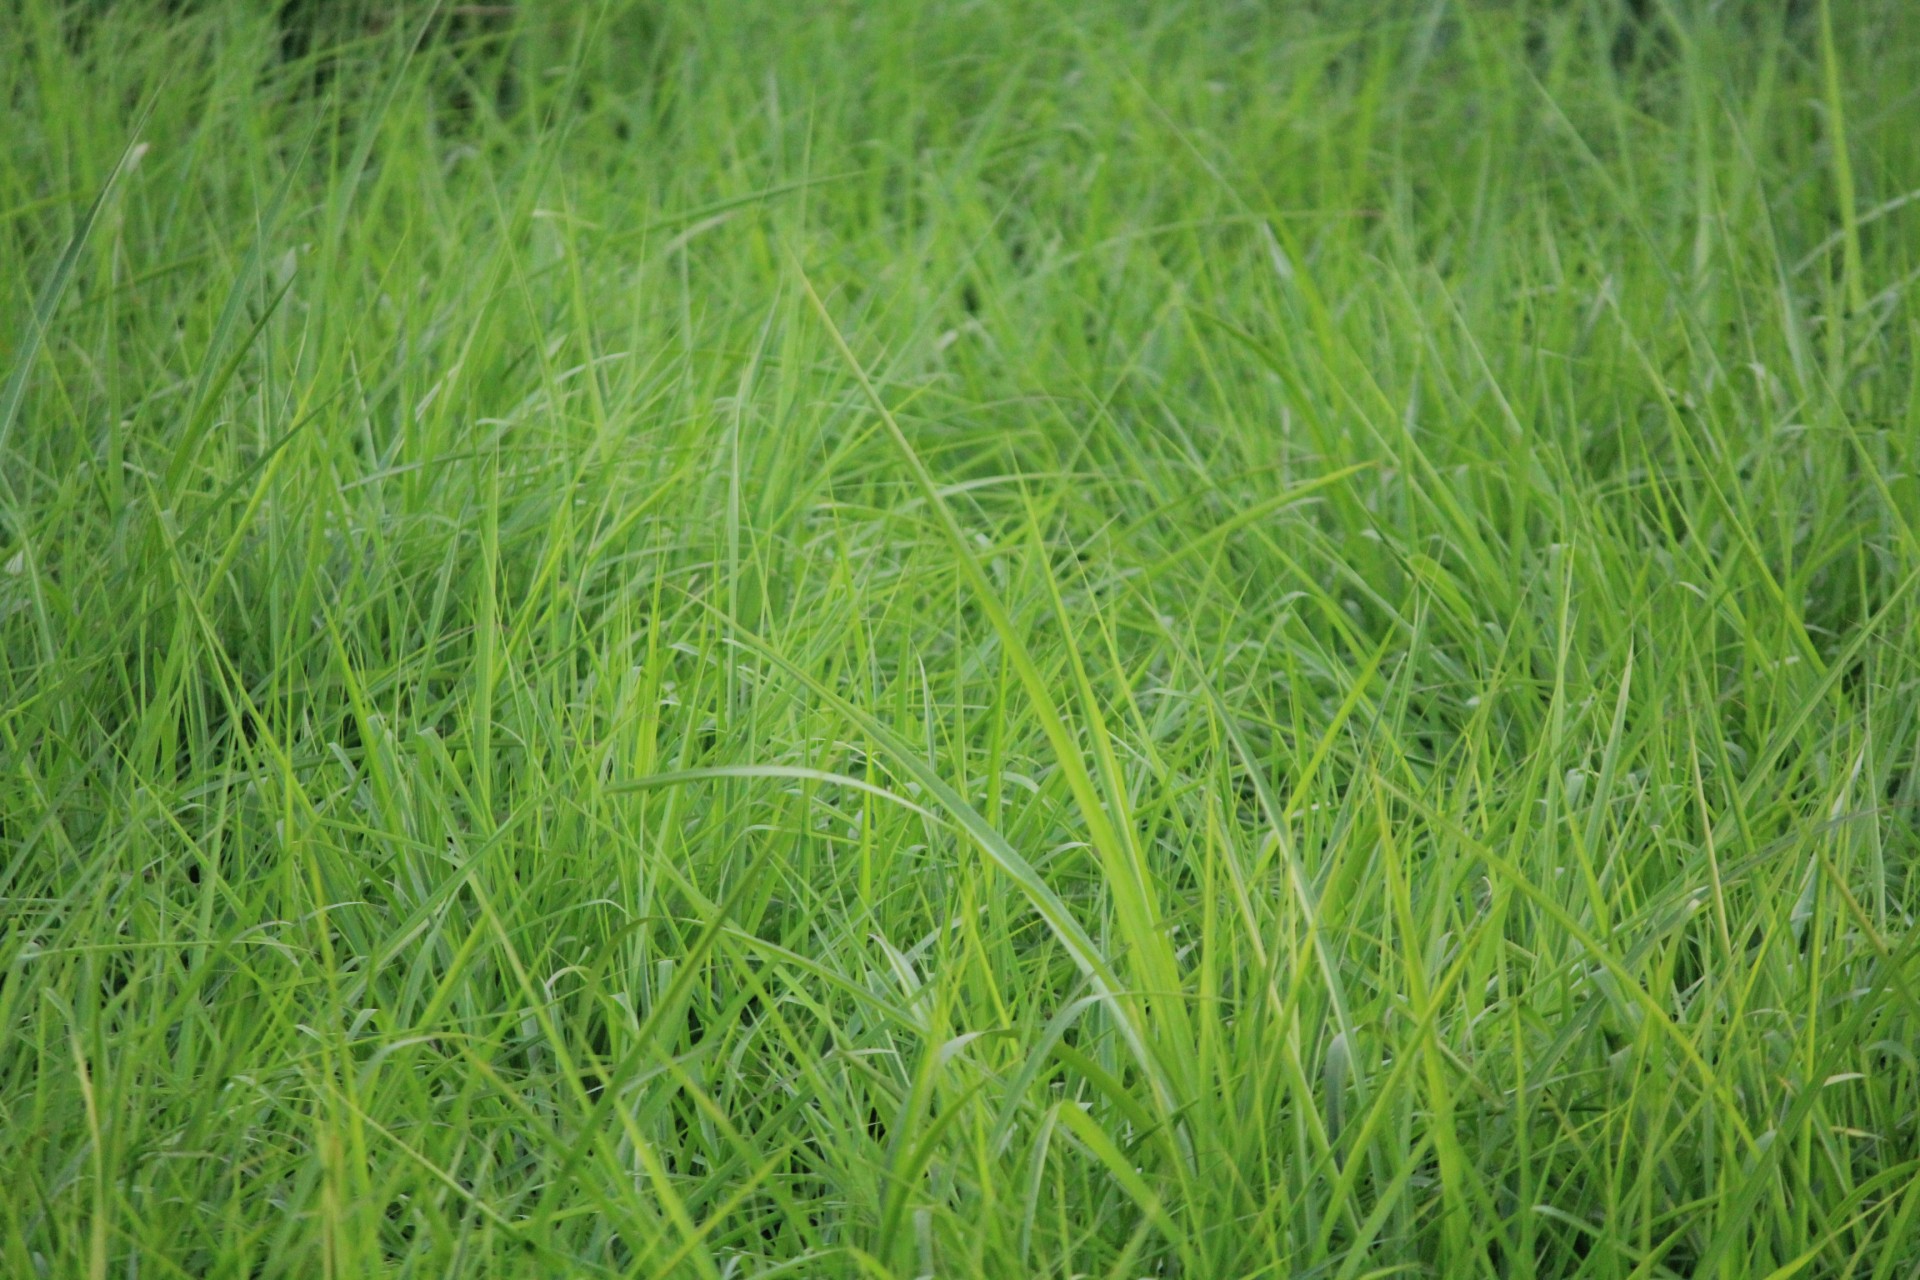 Мятлик луговой фото и описание газон